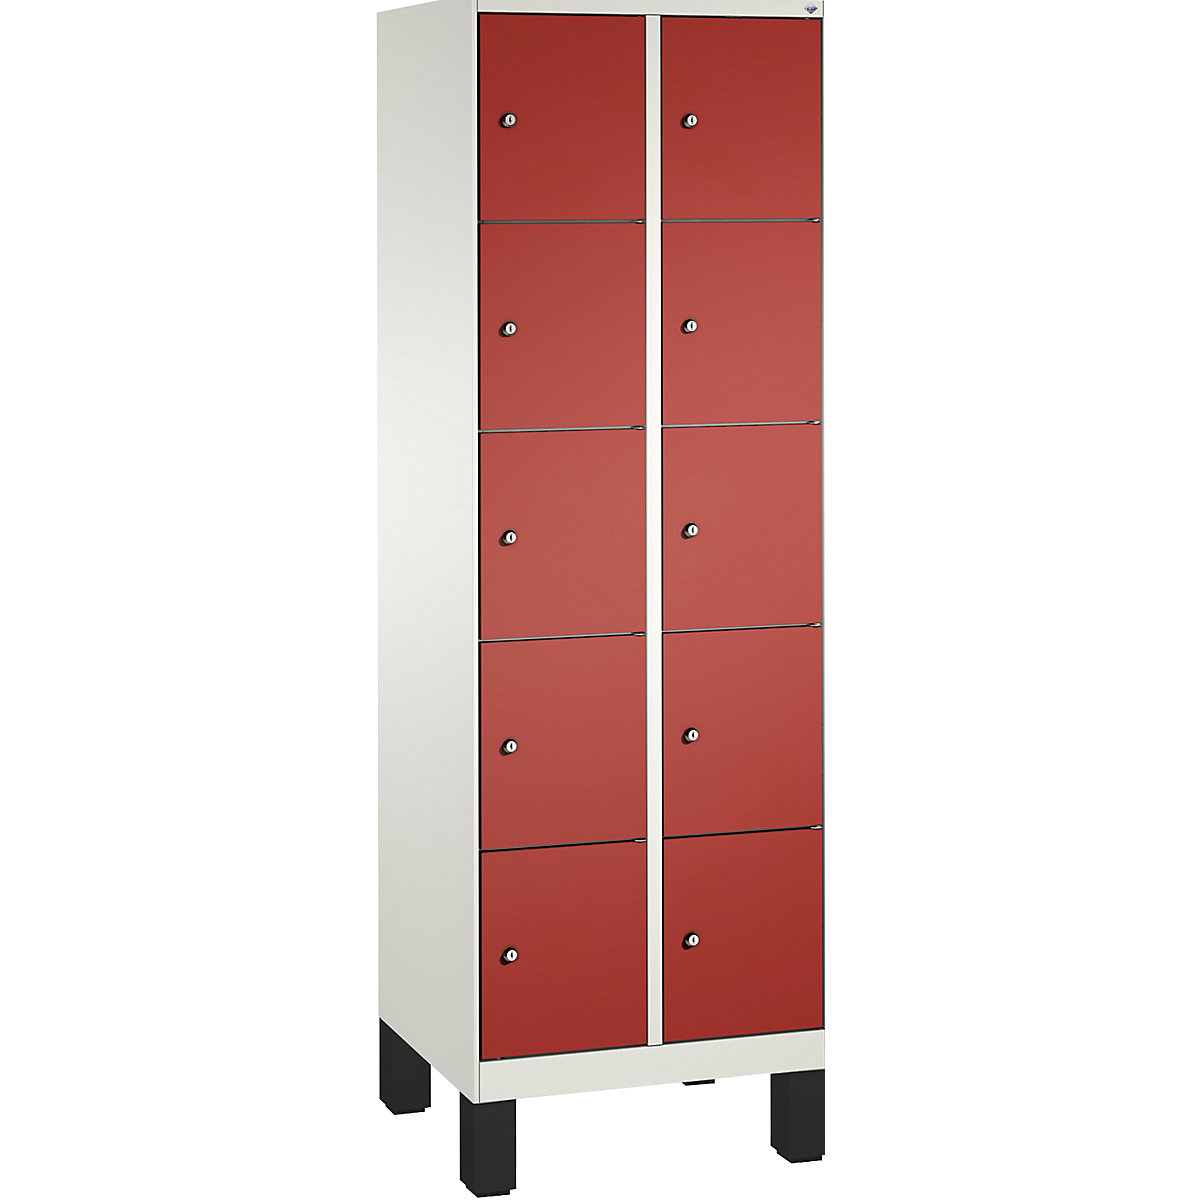 Armoire à casiers sur pieds EVOLO – C+P, 2 compartiments, 5 casiers chacun, largeur compartiments 300 mm, blanc trafic / rouge feu-4